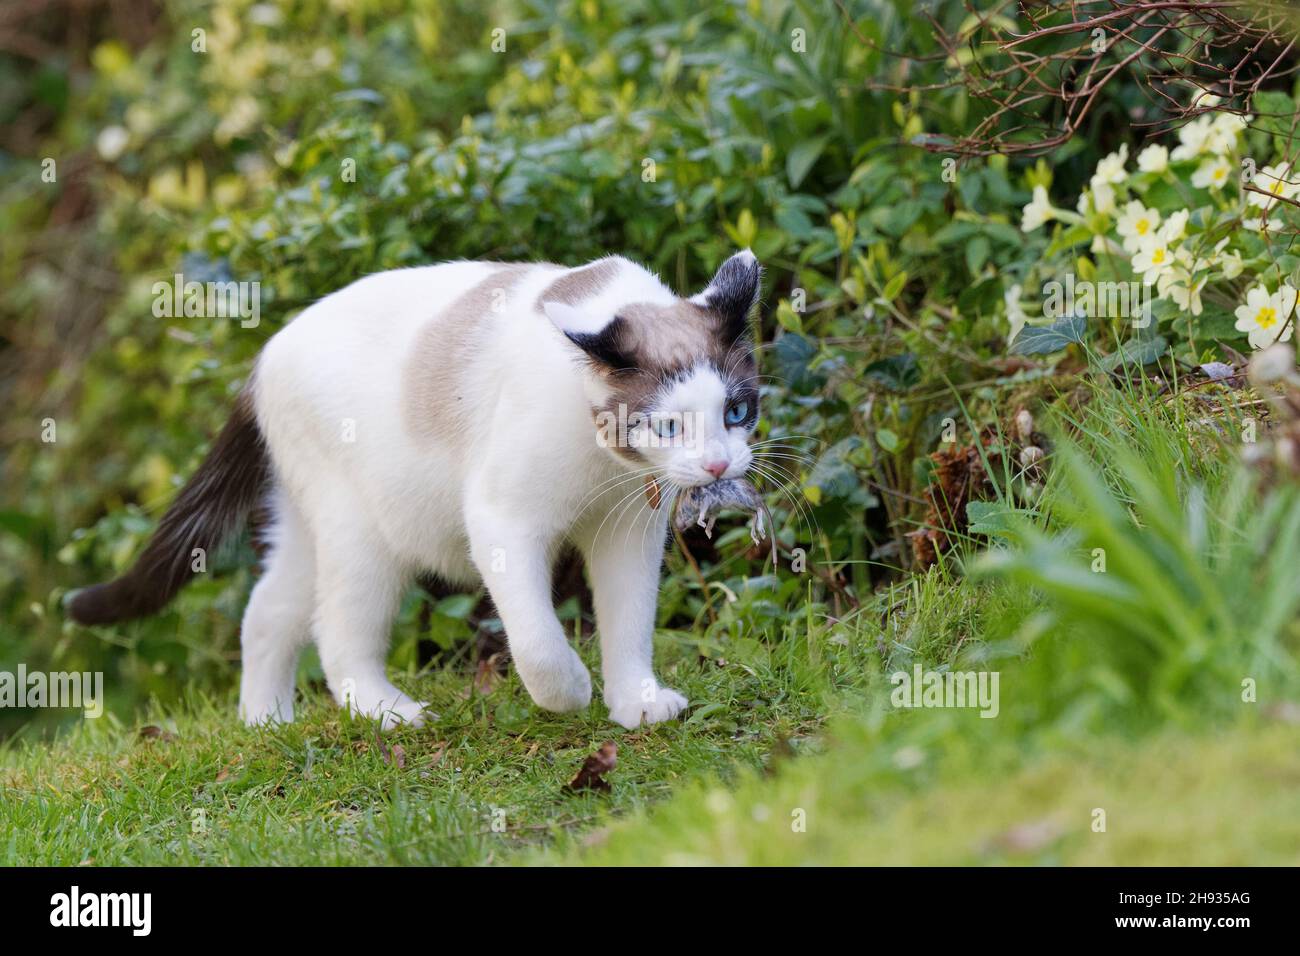 Chat en raquettes (Felis catus) portant une souris de champ à queue longue (Apodemus sylvaticus) qu'il a attrapée, jardin Wiltshire, Royaume-Uni, avril. Banque D'Images